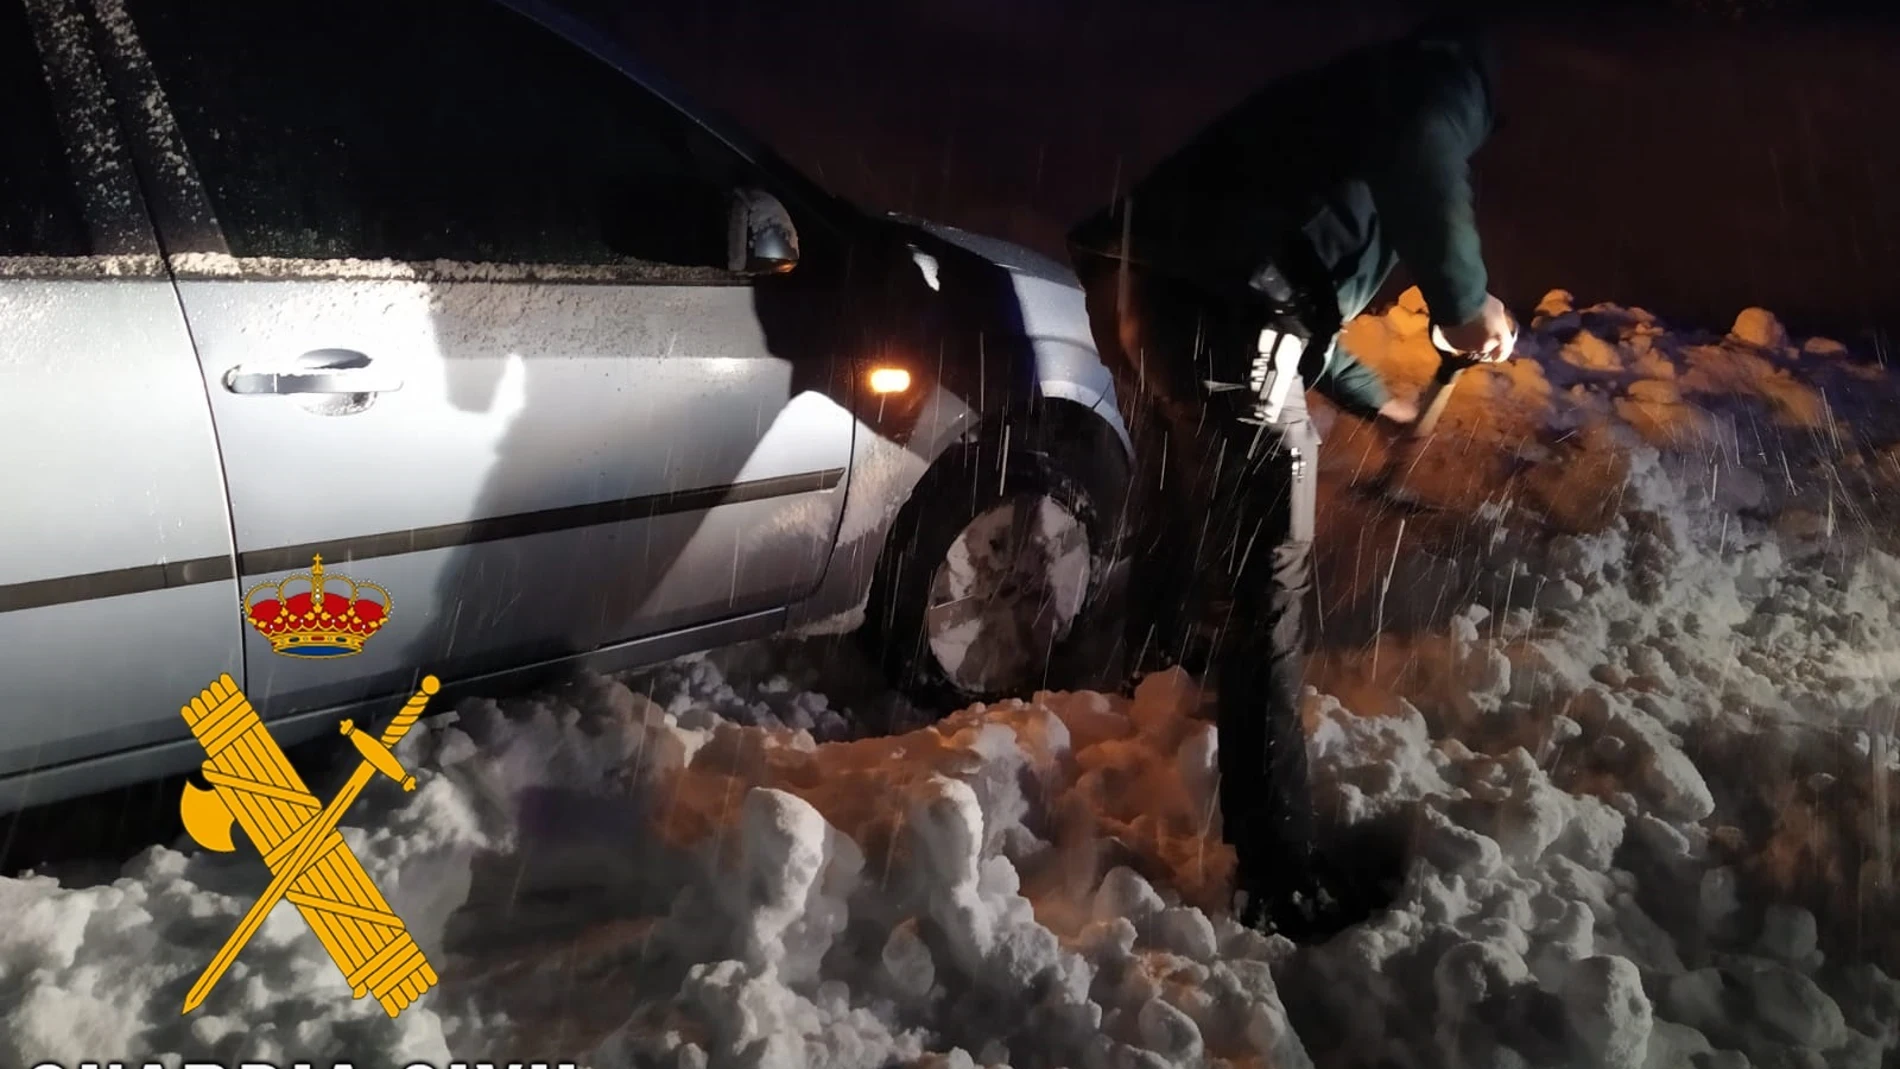 Almería.-Sucesos.-Temporal.-Guardia Civil auxilia a dos conductores tras quedar sus vehículos atrapados en la nieve